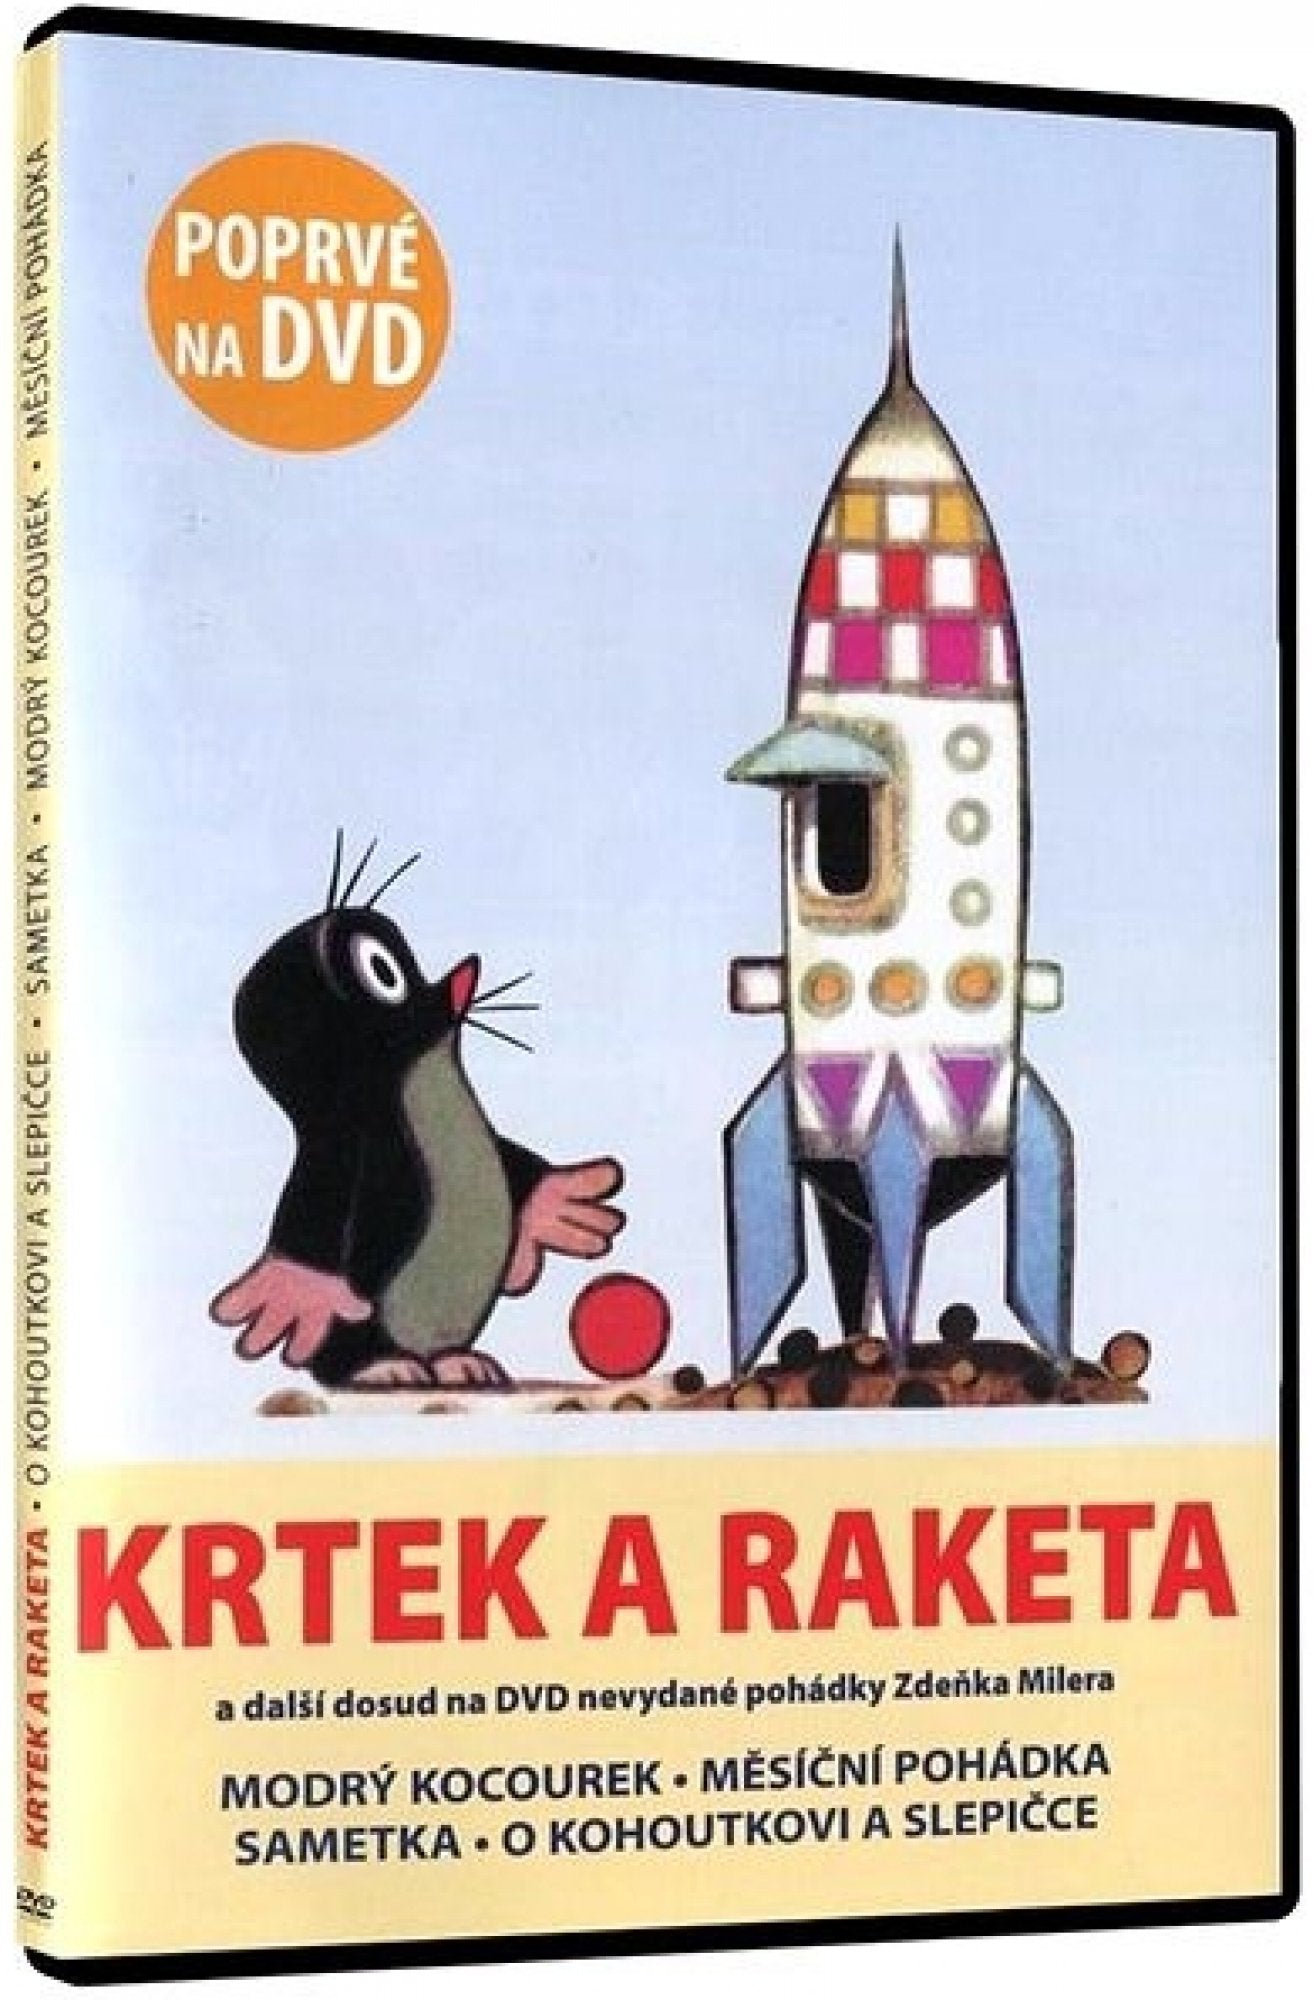 The mole and the rocket / Krtek a raketa DVD